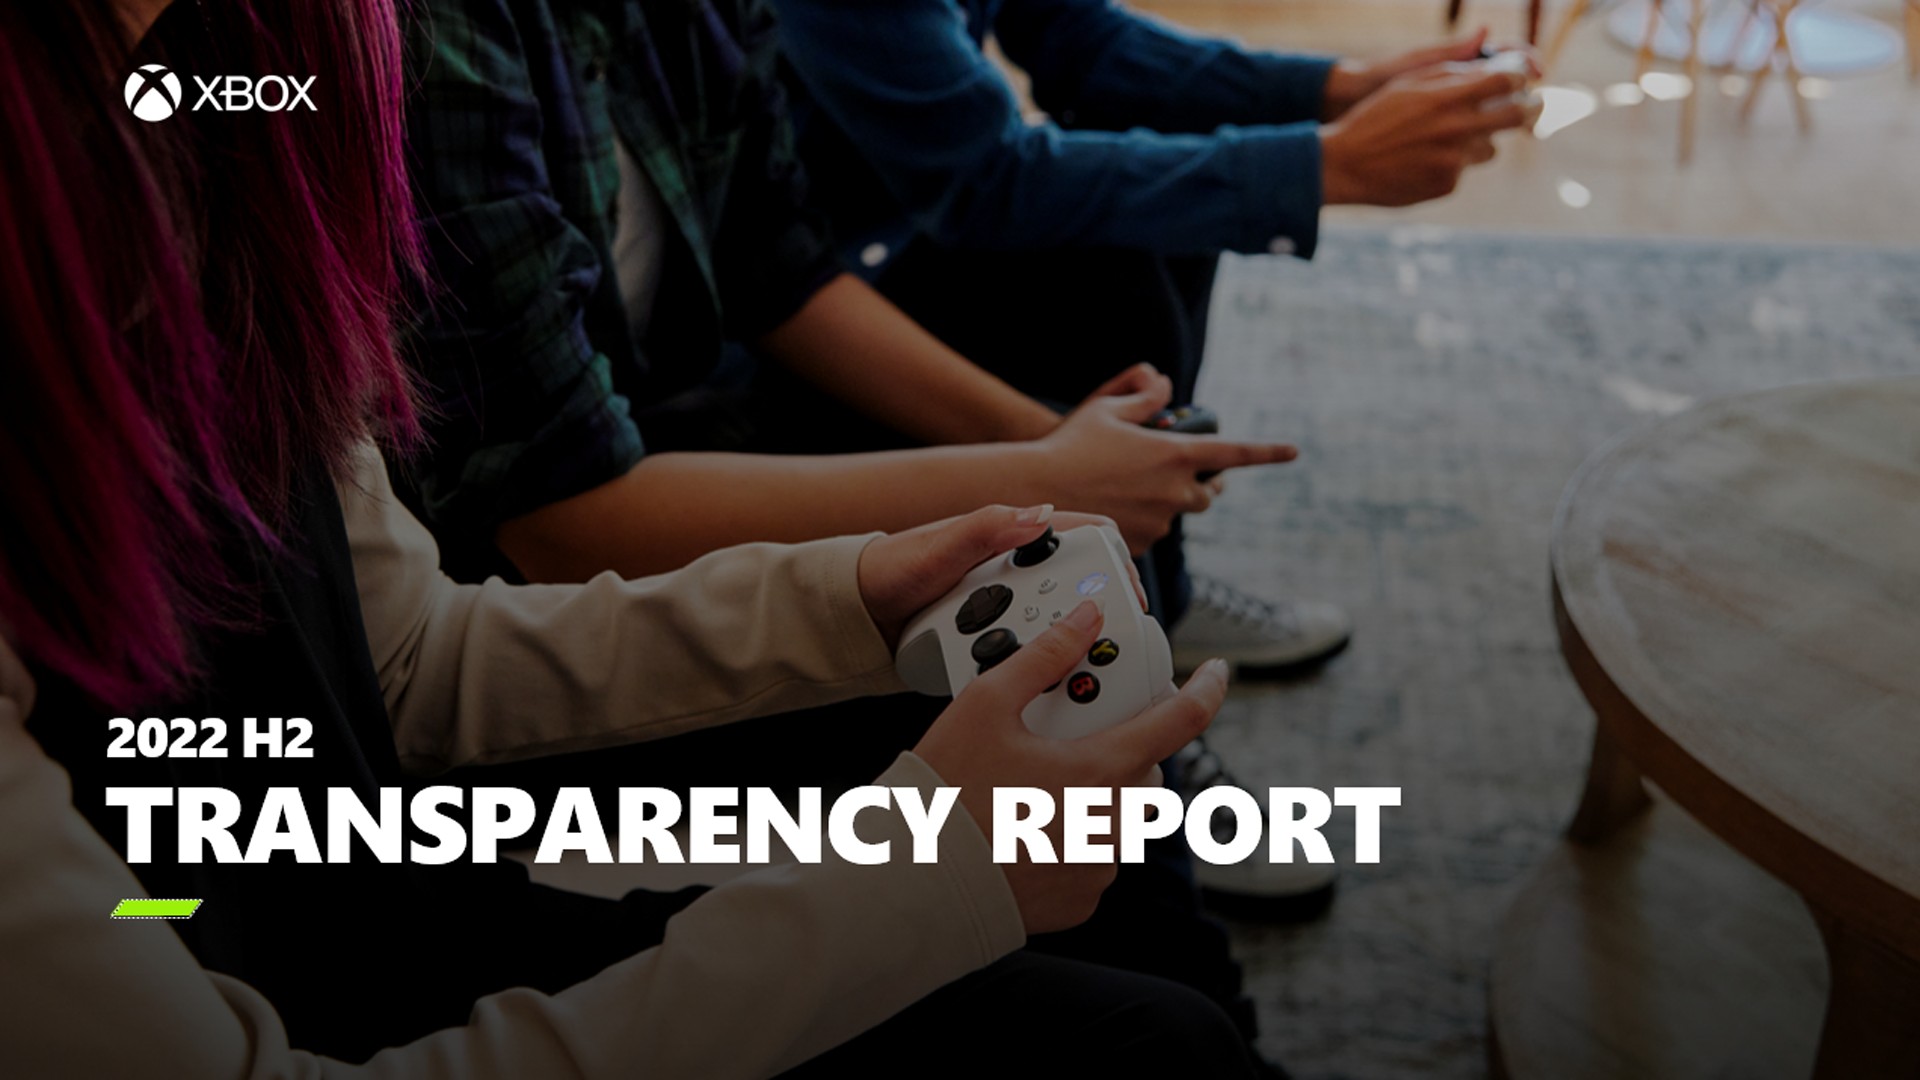 Xbox publica el segundo informe de transparencia que demuestra el papel integral de la moderación proactiva de contenido